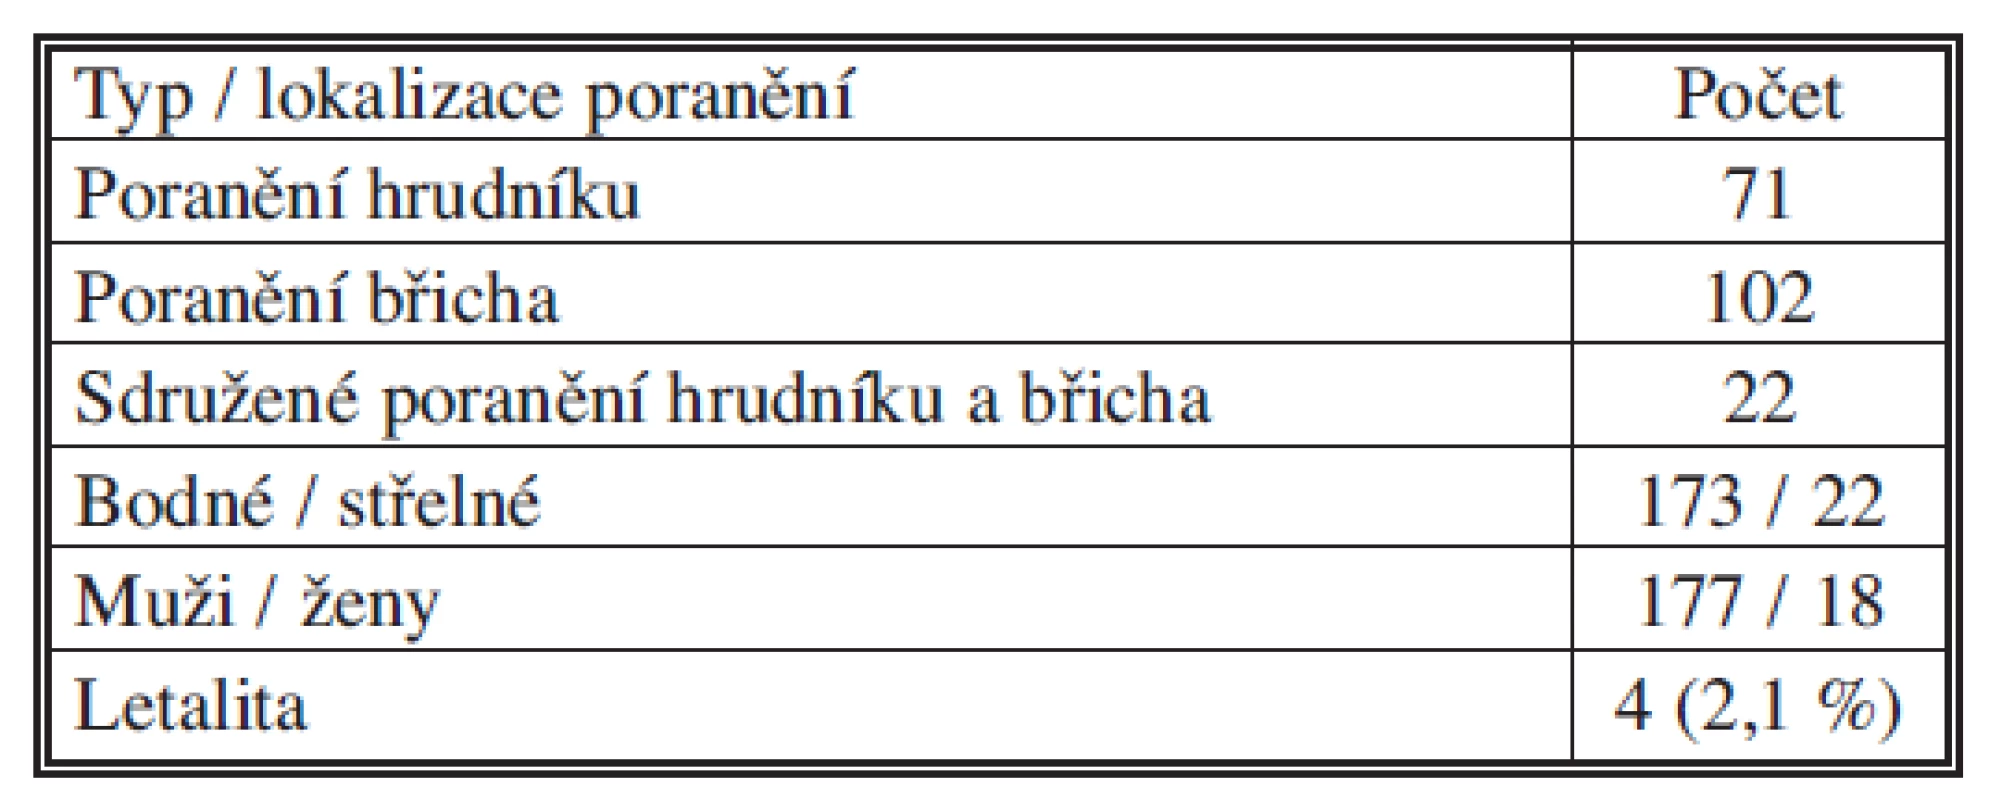 Penetrující poranění hrudníku a břicha (TC FNKV, 1999–2010)
Tab. 1. Penetrating thoracic and abdominal injuries (TC FNKV, 1999–2010)